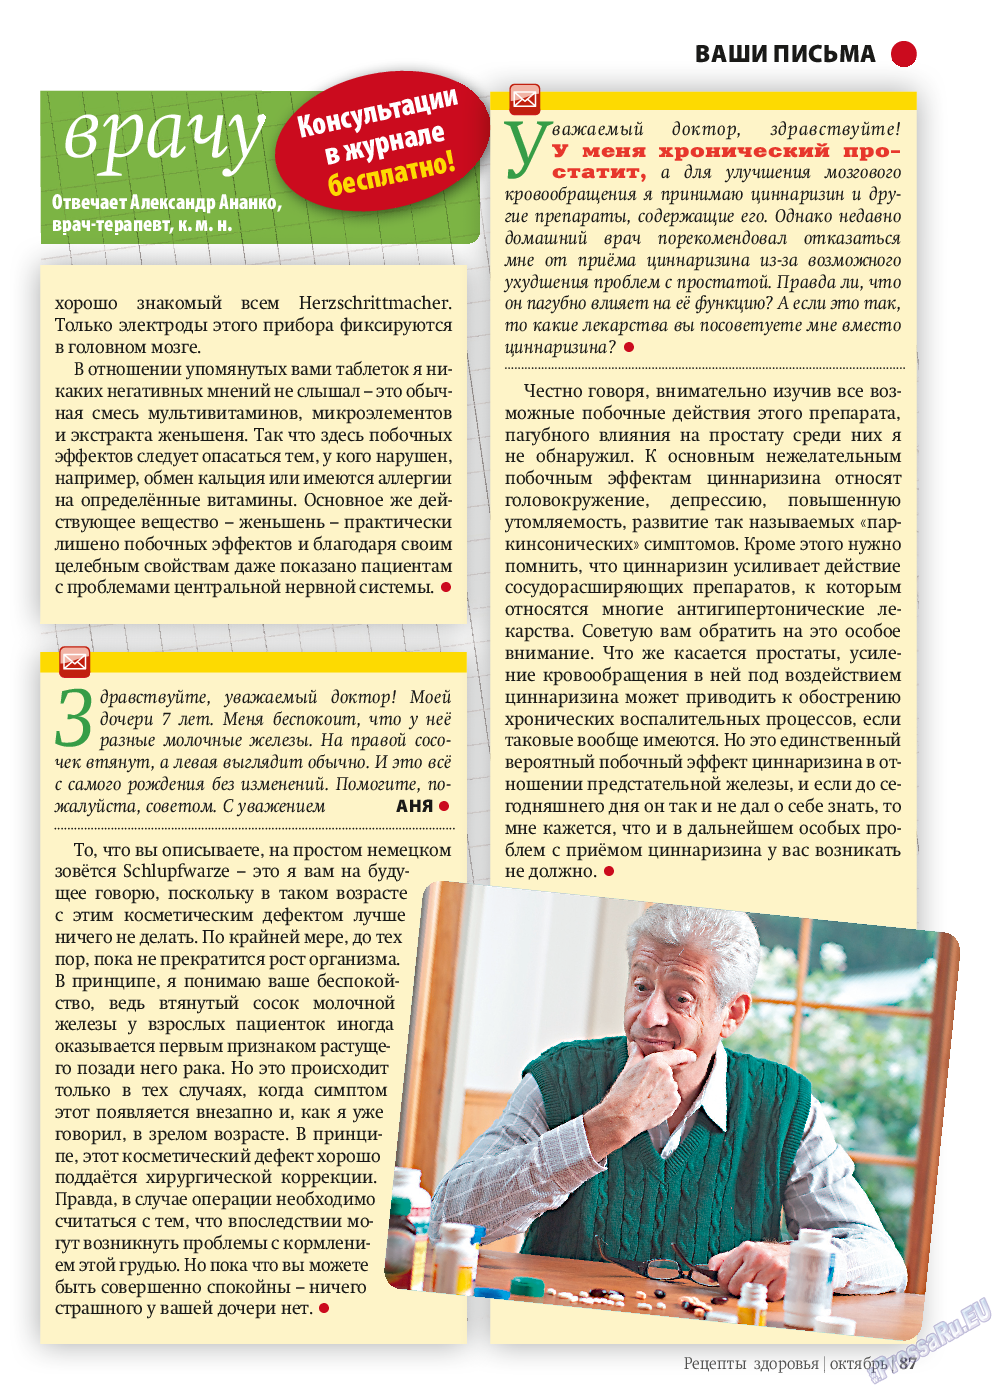 Рецепты здоровья, журнал. 2013 №10 стр.87